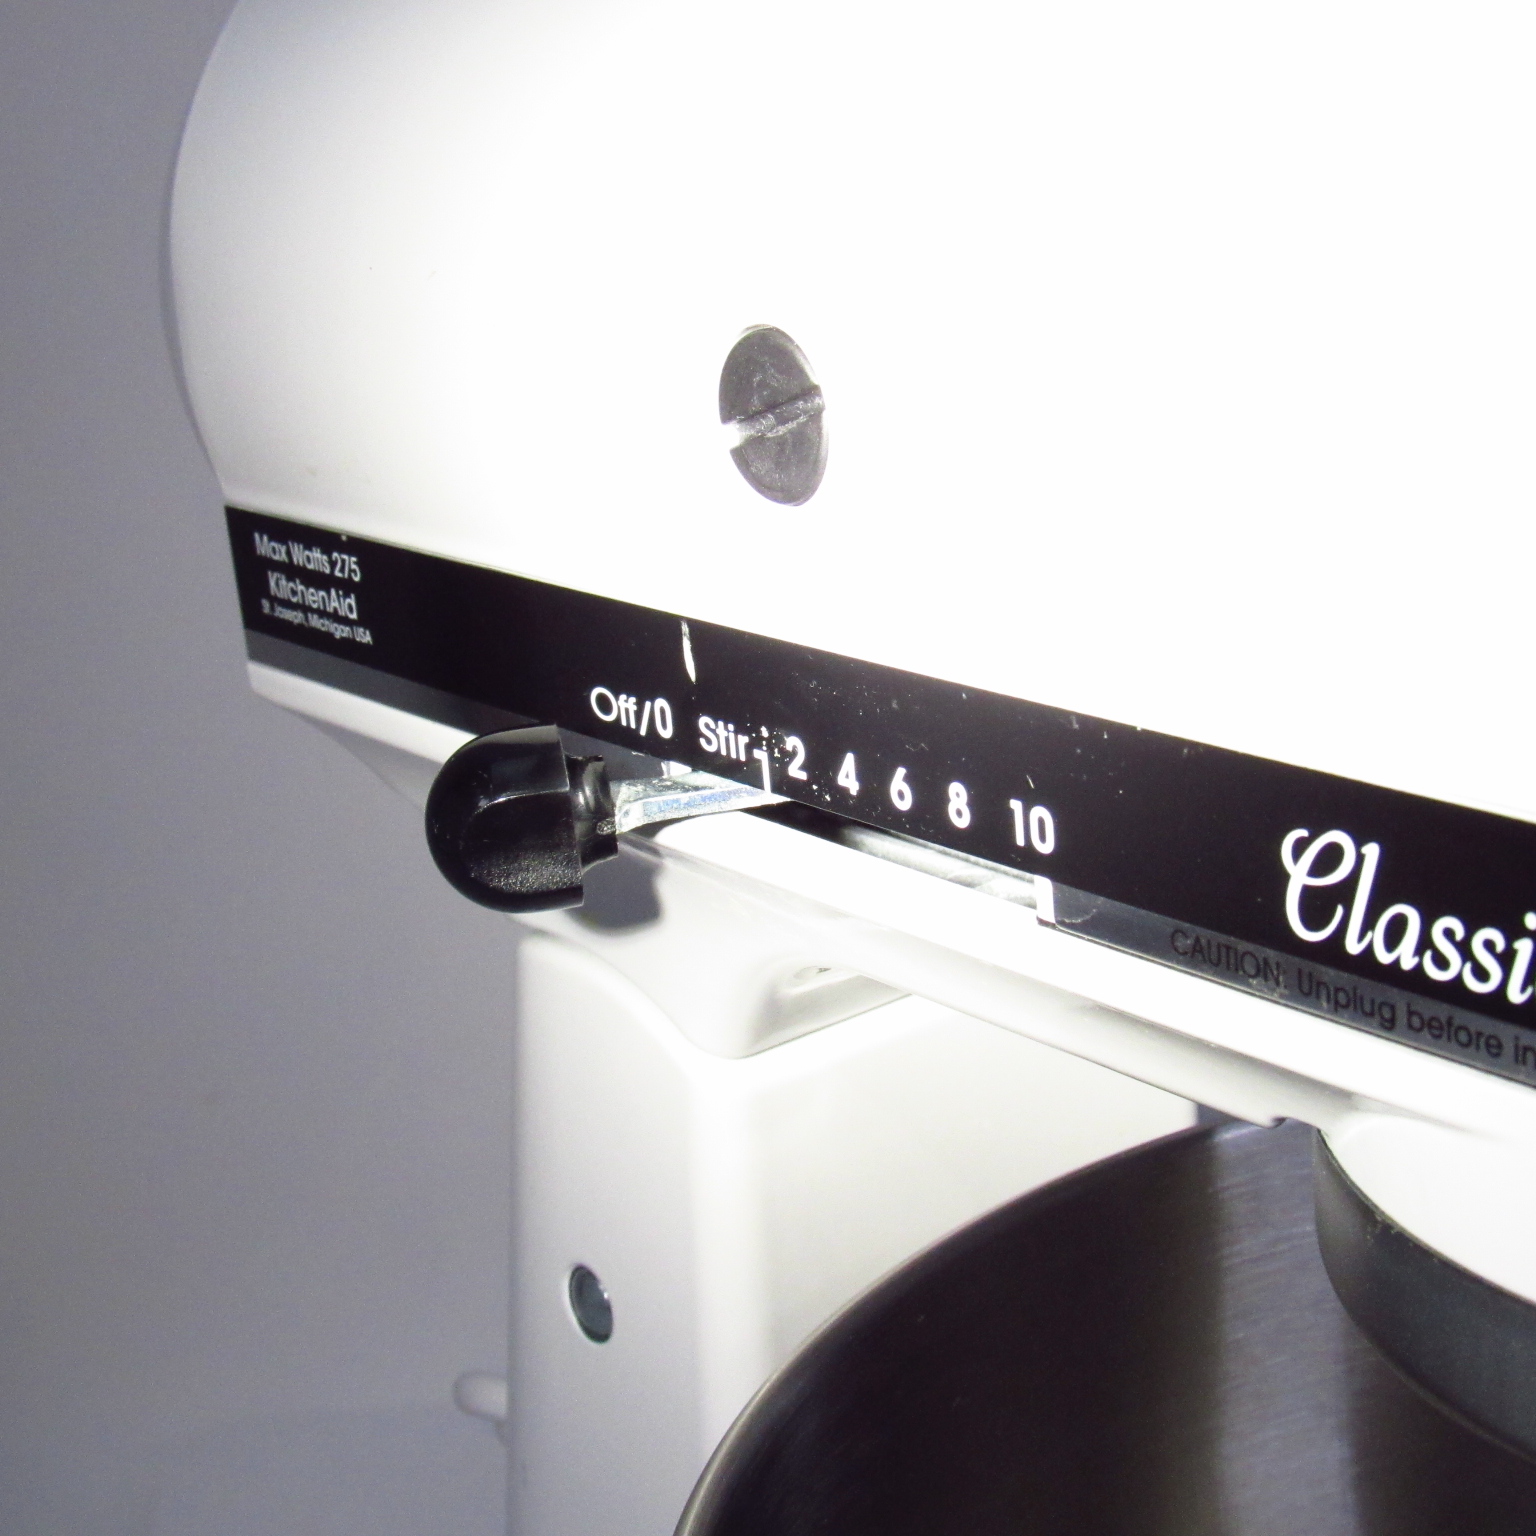 KitchenAid KSM75WH Classic Plus Tilt-Head Stand Mixer - White, 4.5